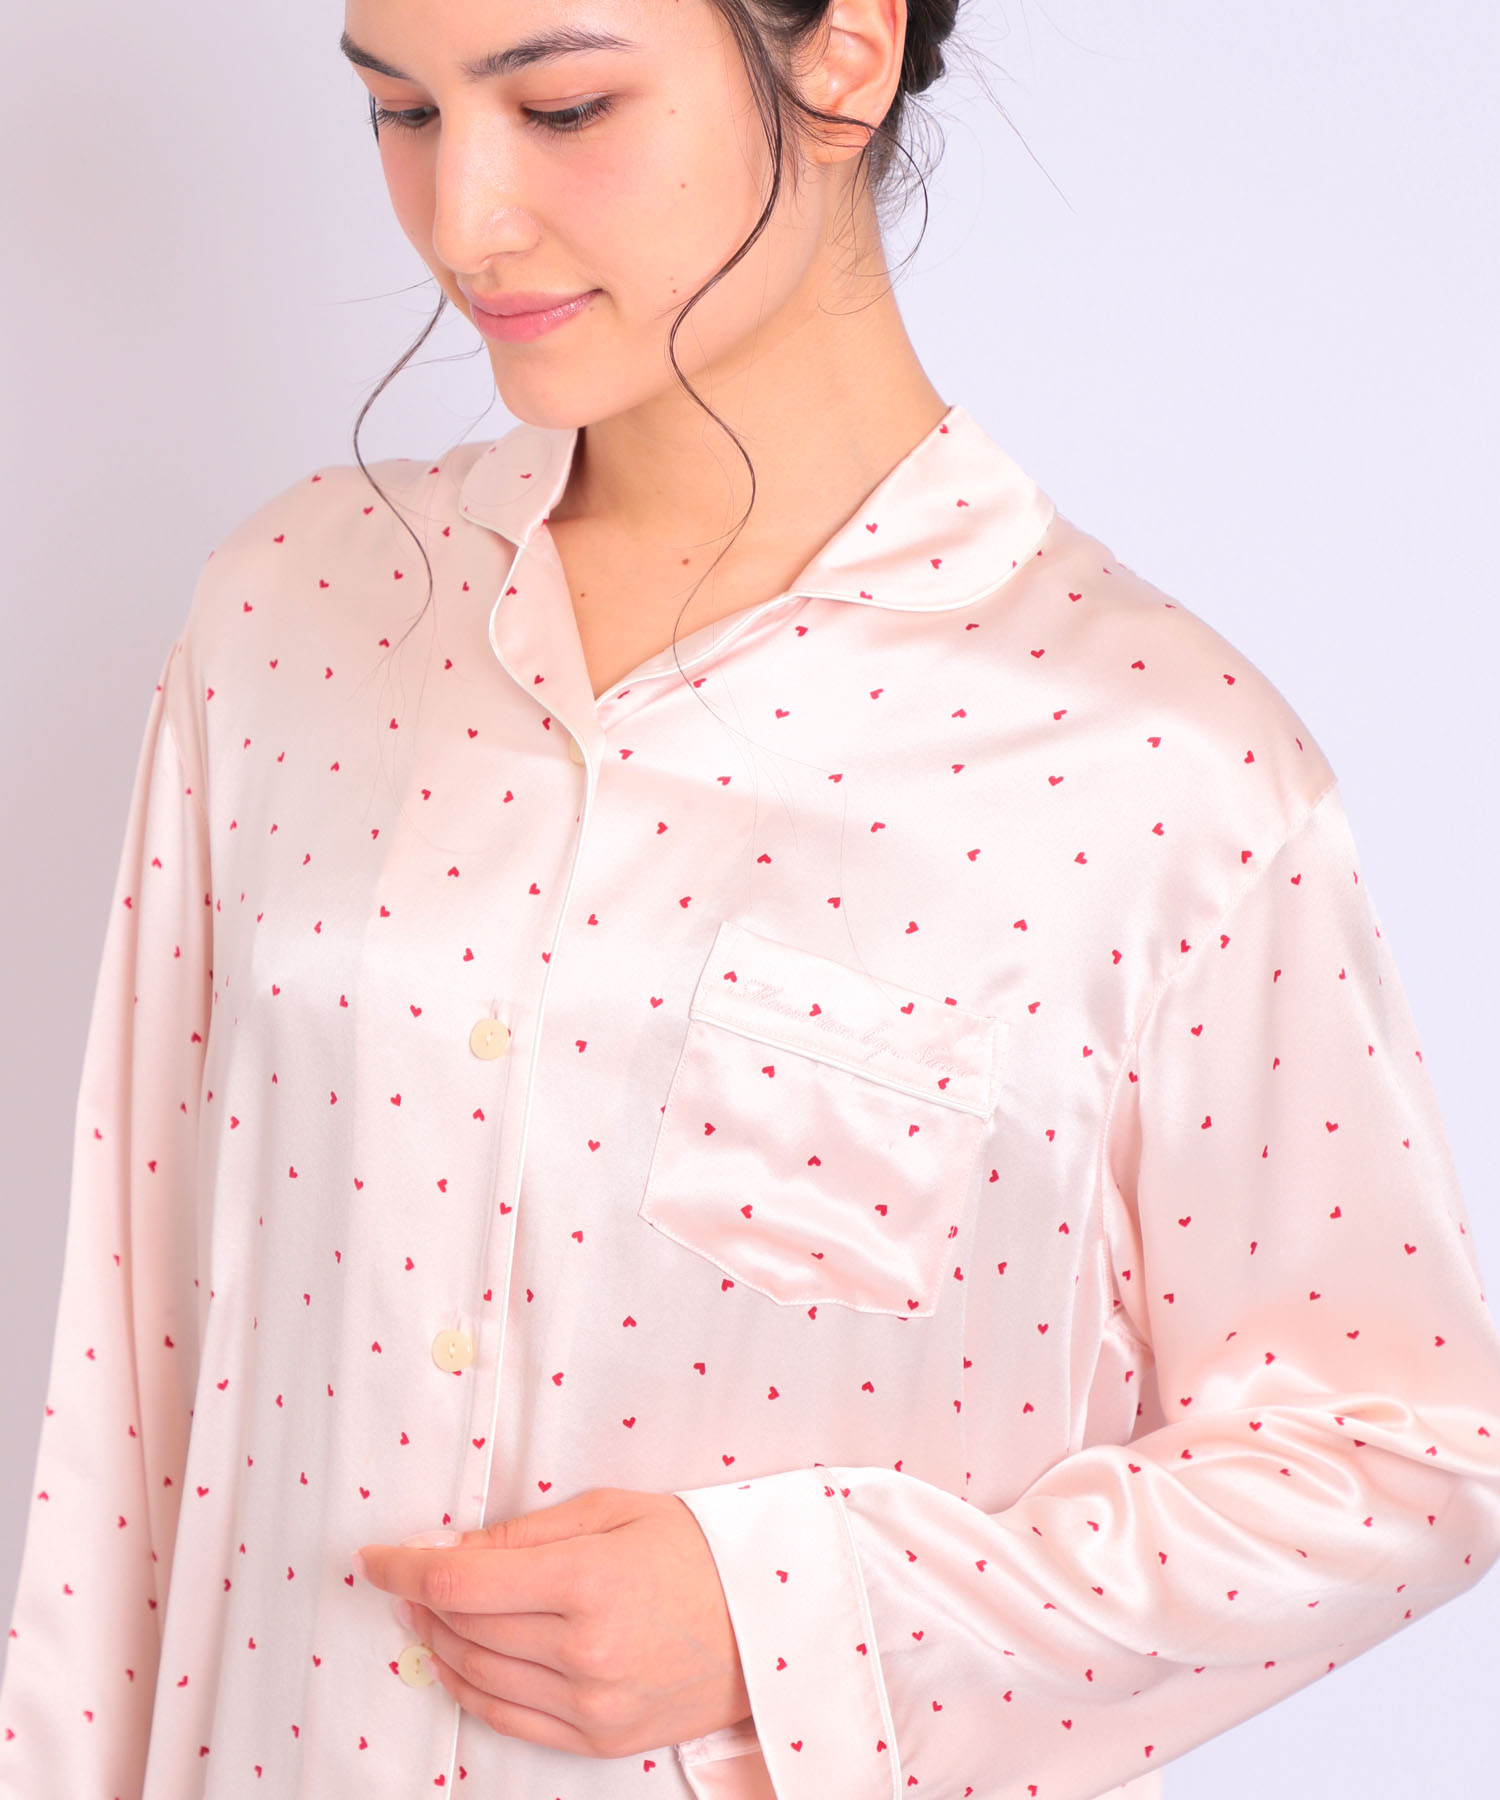 シルクのパジャマ&ルームウェア｜ナルエー公式通販サイト